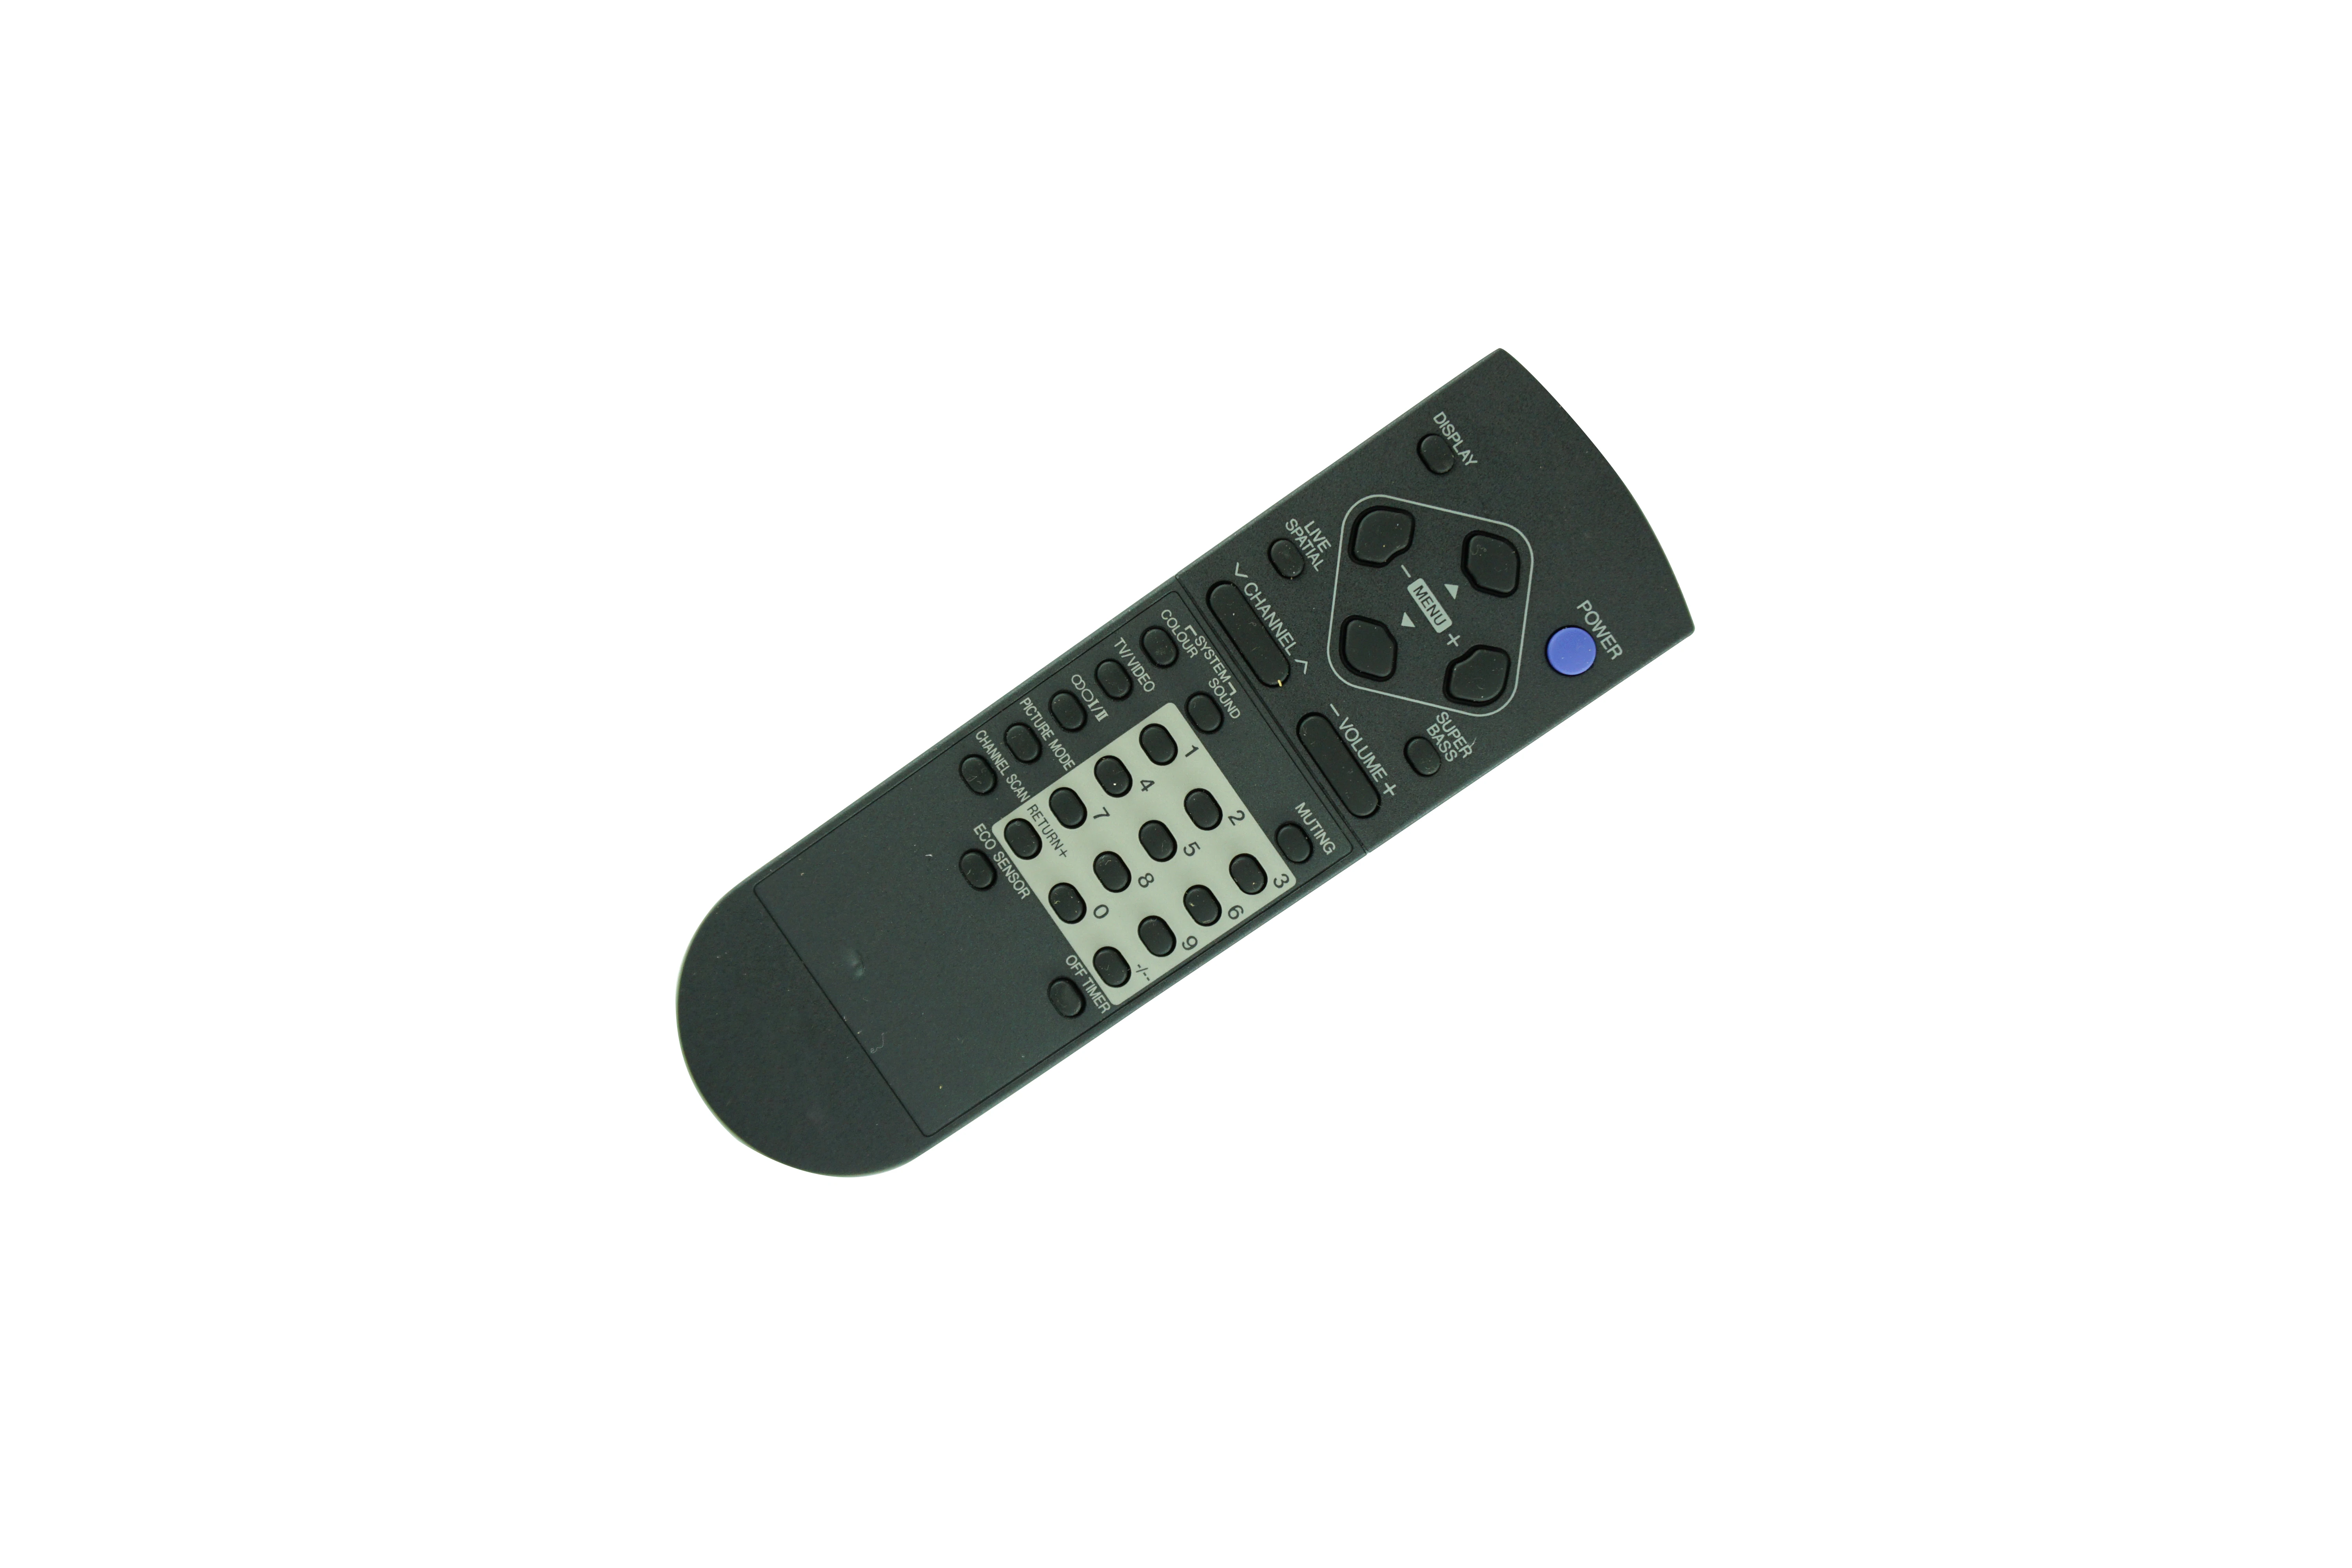 

Remote Control For JVC RM-C1286 AV-21M335 AV-21M315 AV-21V315 AV-25M335 AV-25M315 AV-25V315 Colour Color Television CRT TV